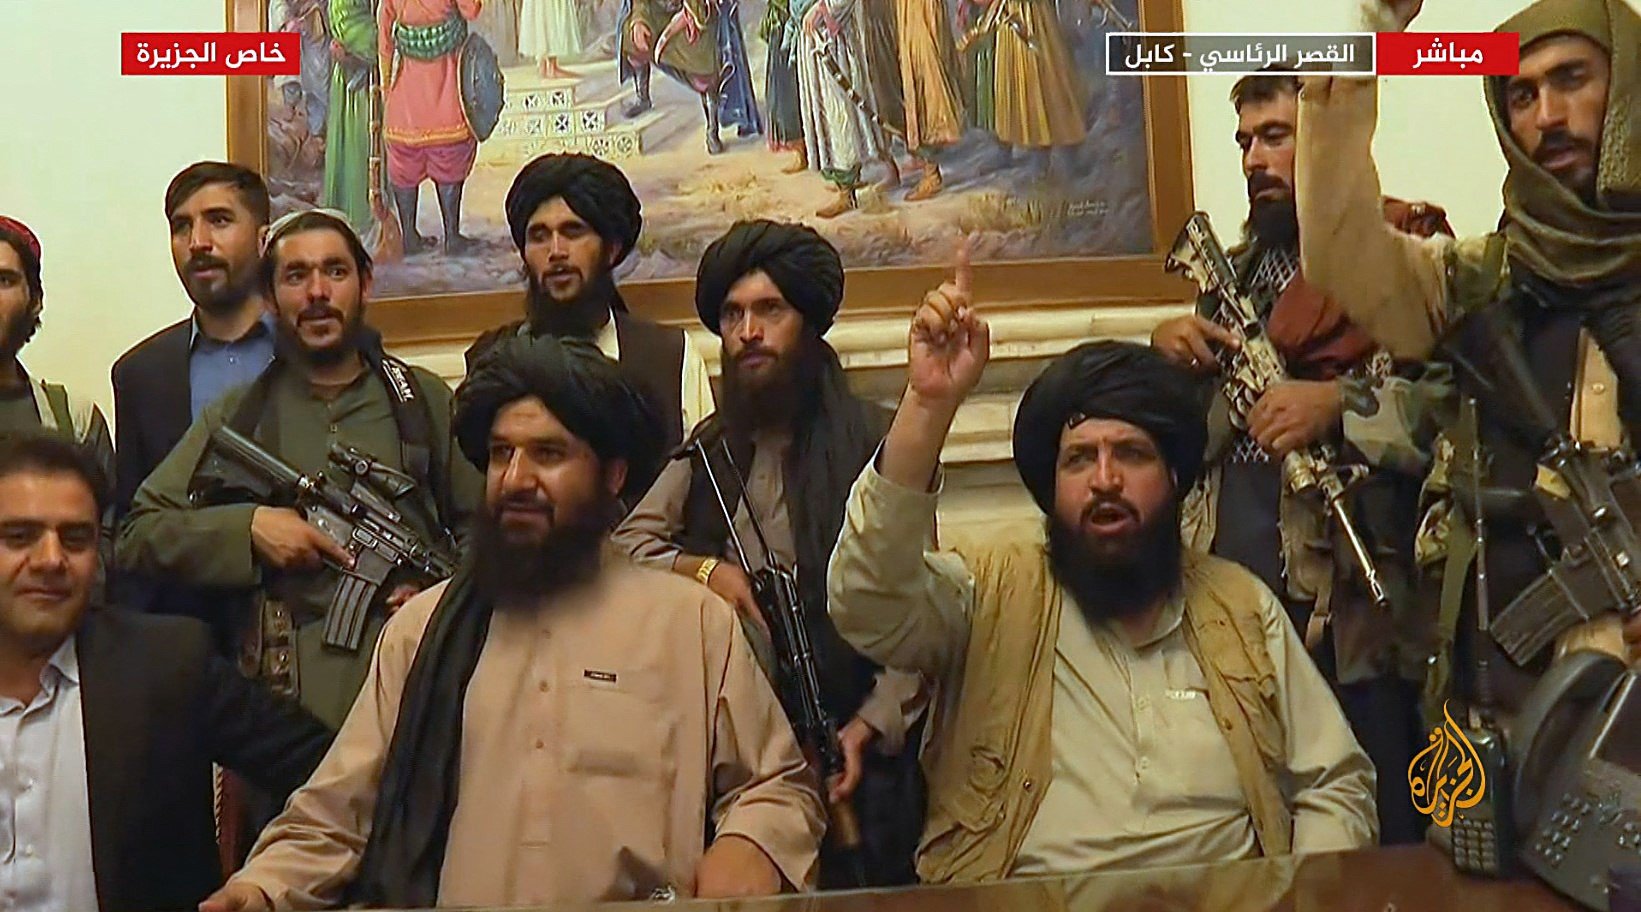 Capture extraite des images du réseau de télévision Al Jazeera montrant la prise de contrôle du palais présidentiel par les talibans, le 16 août 2021 à Kaboul (AFP)